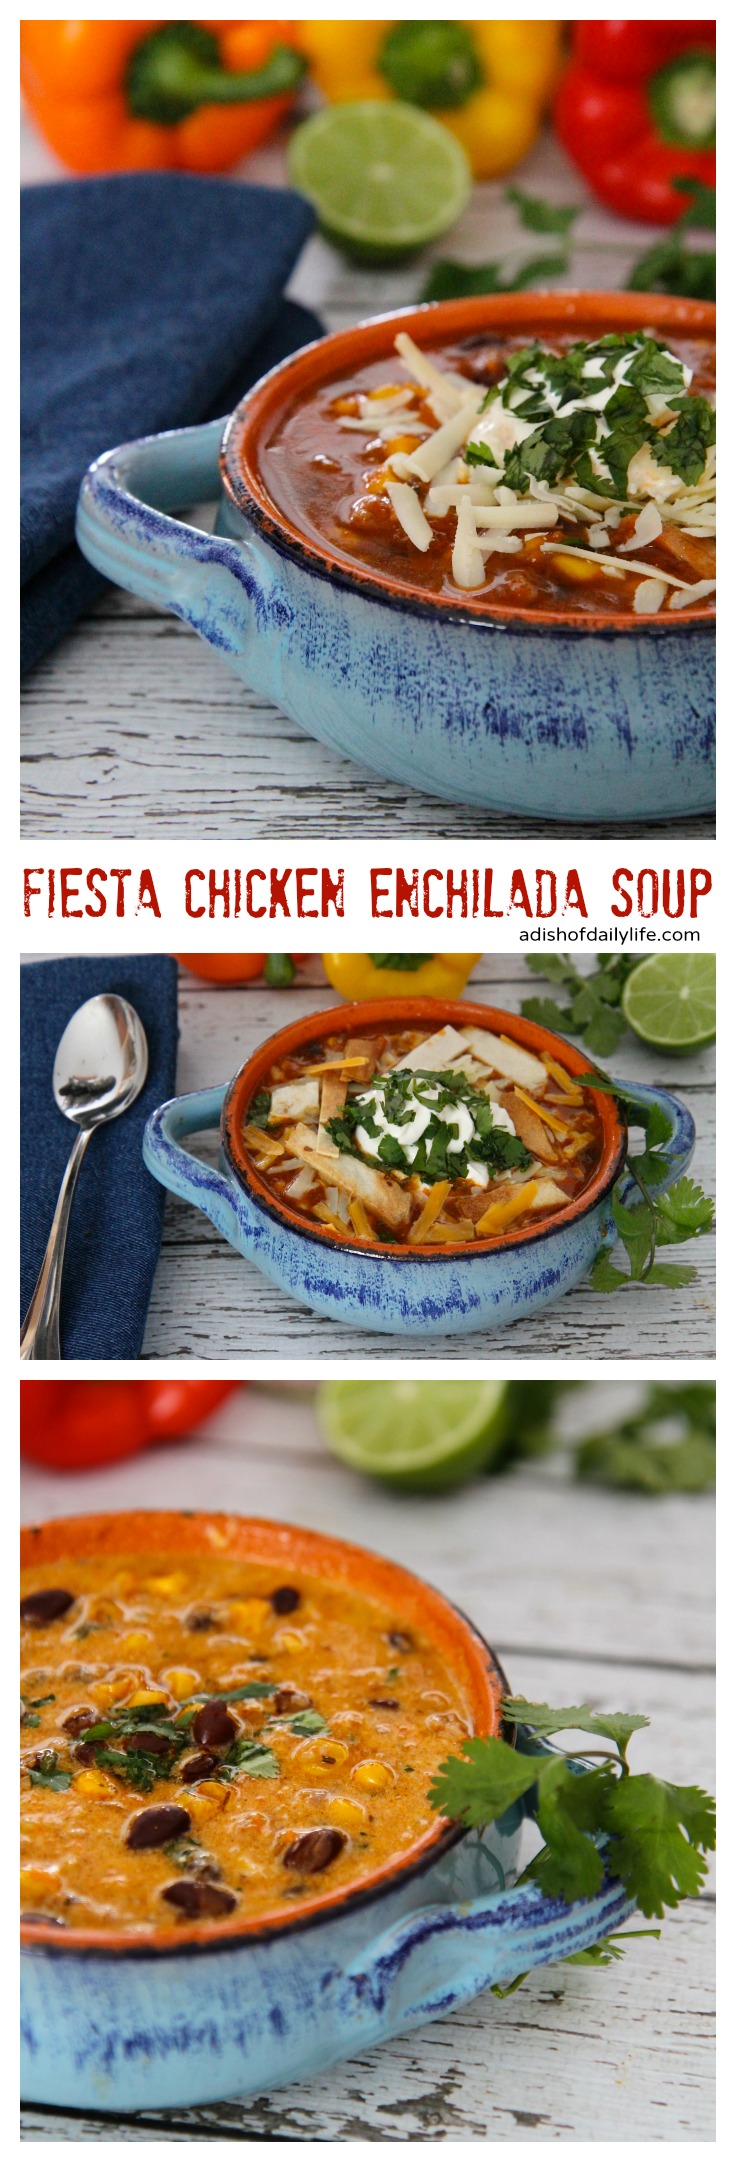 Fiesta-Chicken-Enchilada-Soup